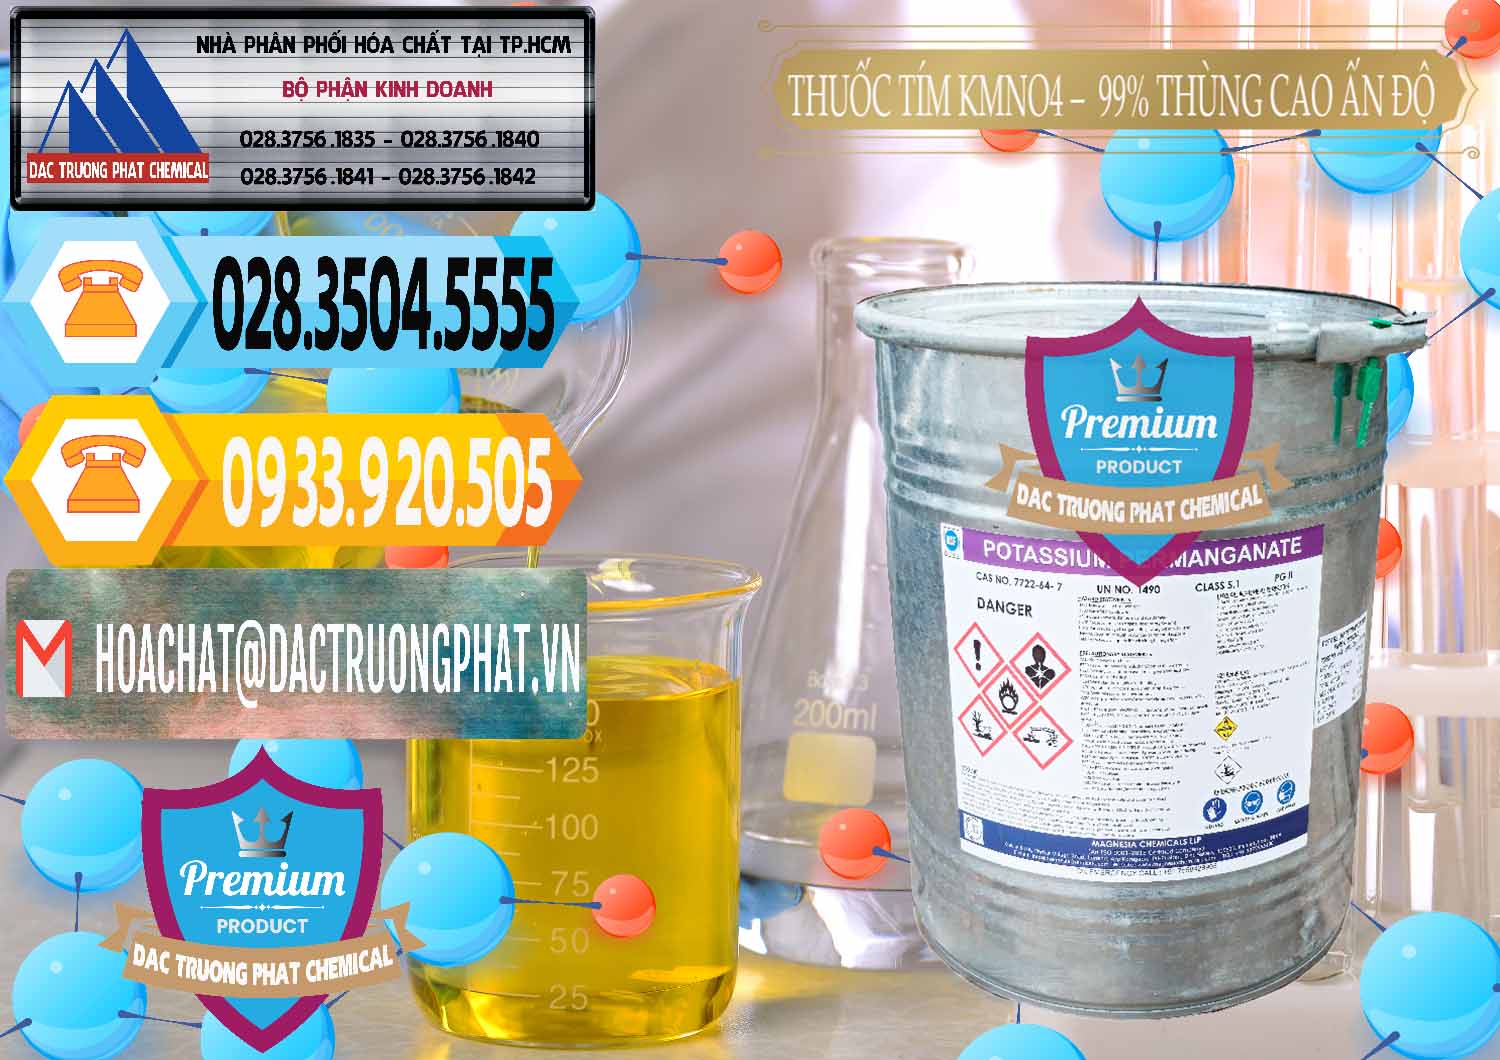 Nơi chuyên bán - cung ứng Thuốc Tím - KMNO4 Thùng Cao 99% Magnesia Chemicals Ấn Độ India - 0164 - Cty cung cấp ( nhập khẩu ) hóa chất tại TP.HCM - hoachattayrua.net